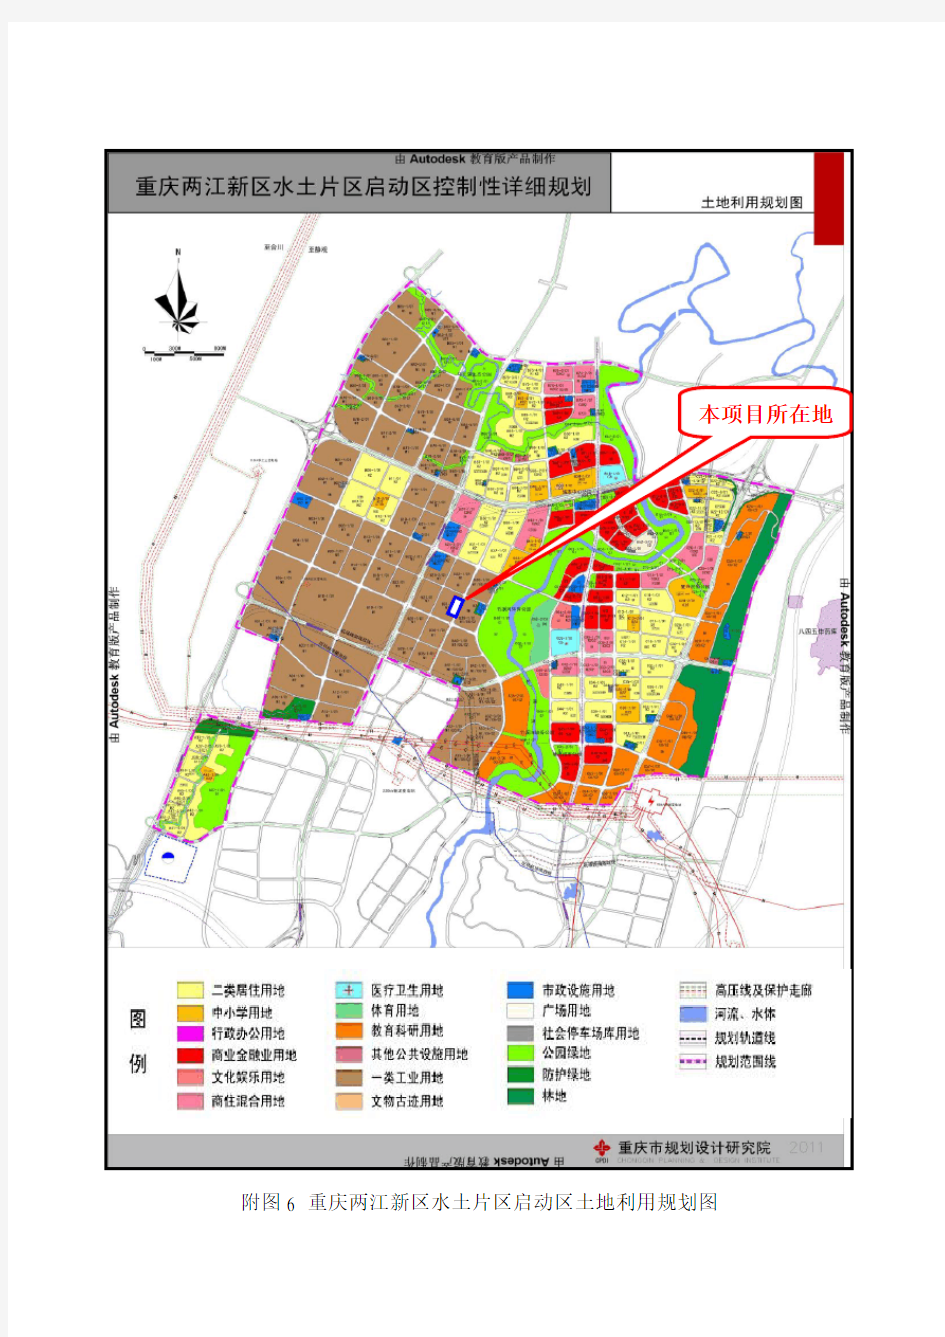 重庆两江新区水土片区启动区土地利用规划图